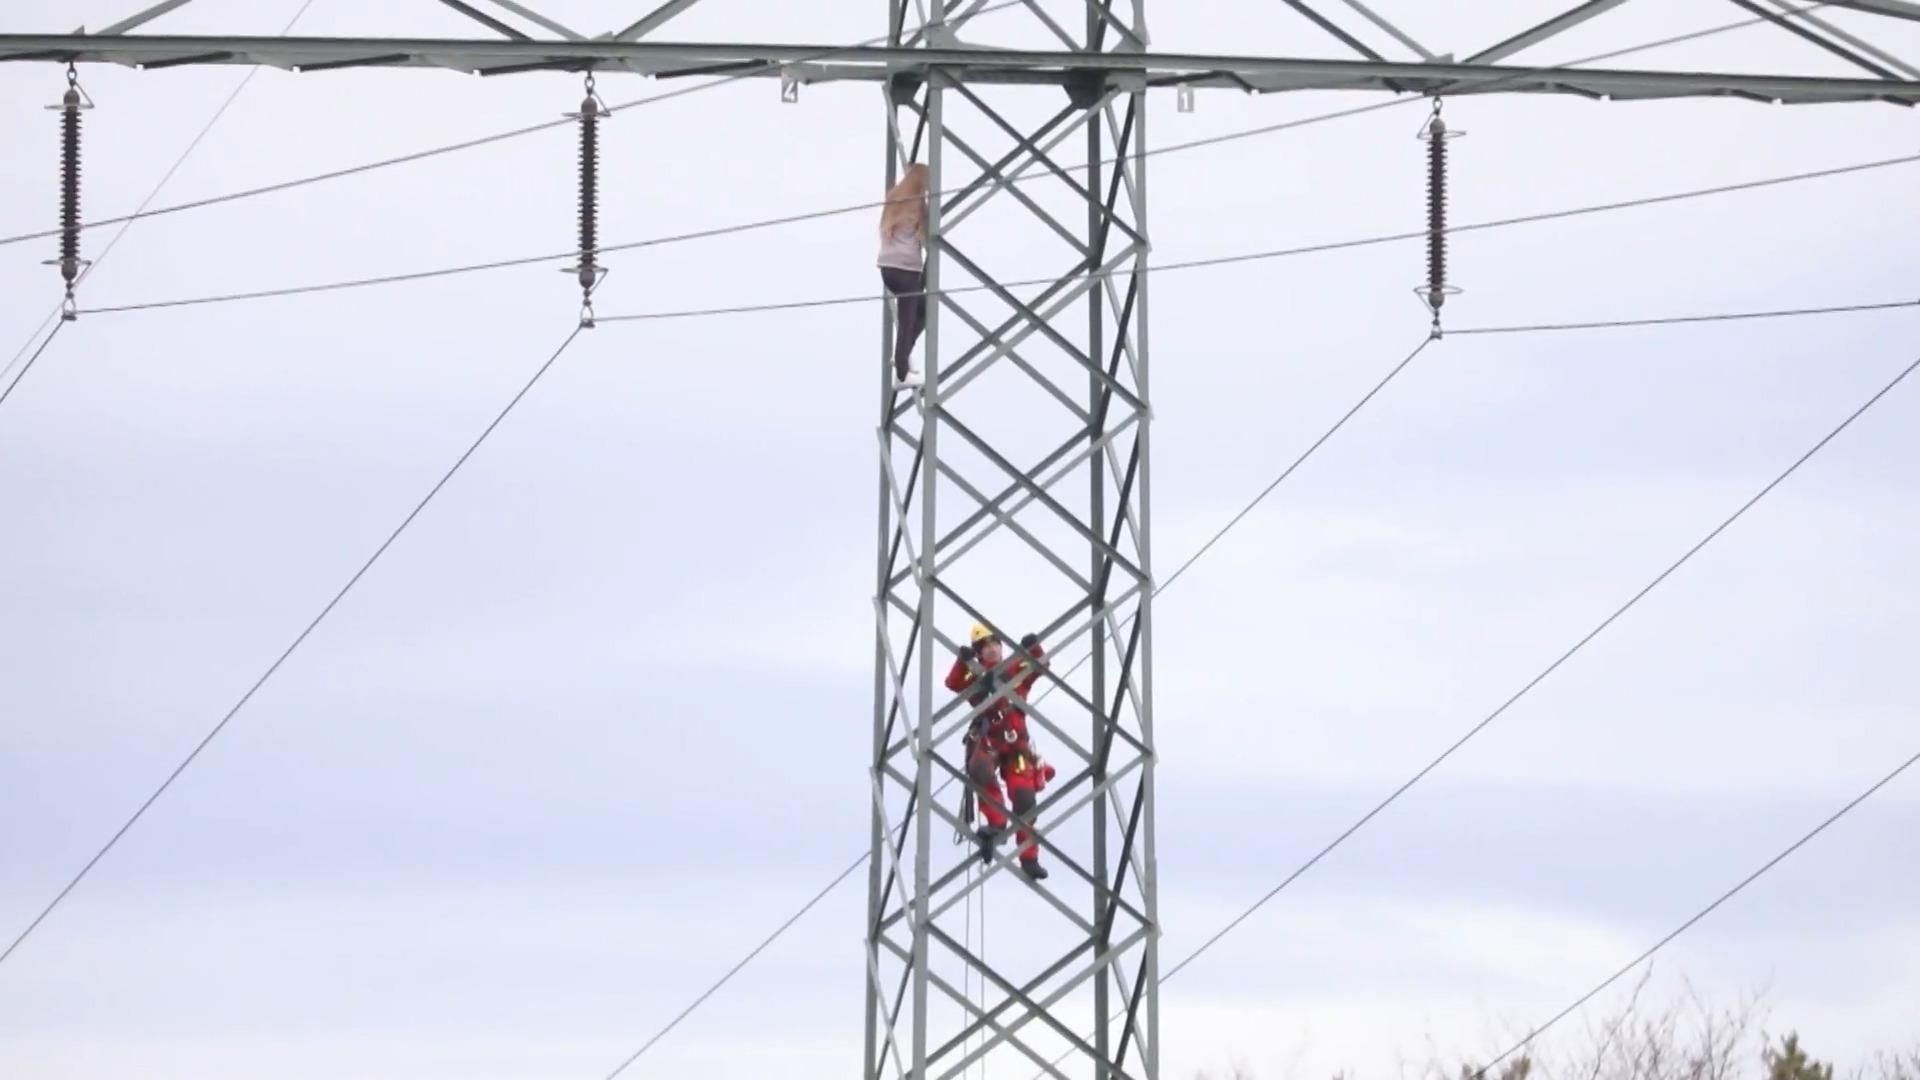 Frau klettert auf Strommast - Zehntausende ohne Strom! Chaos in Sachsen